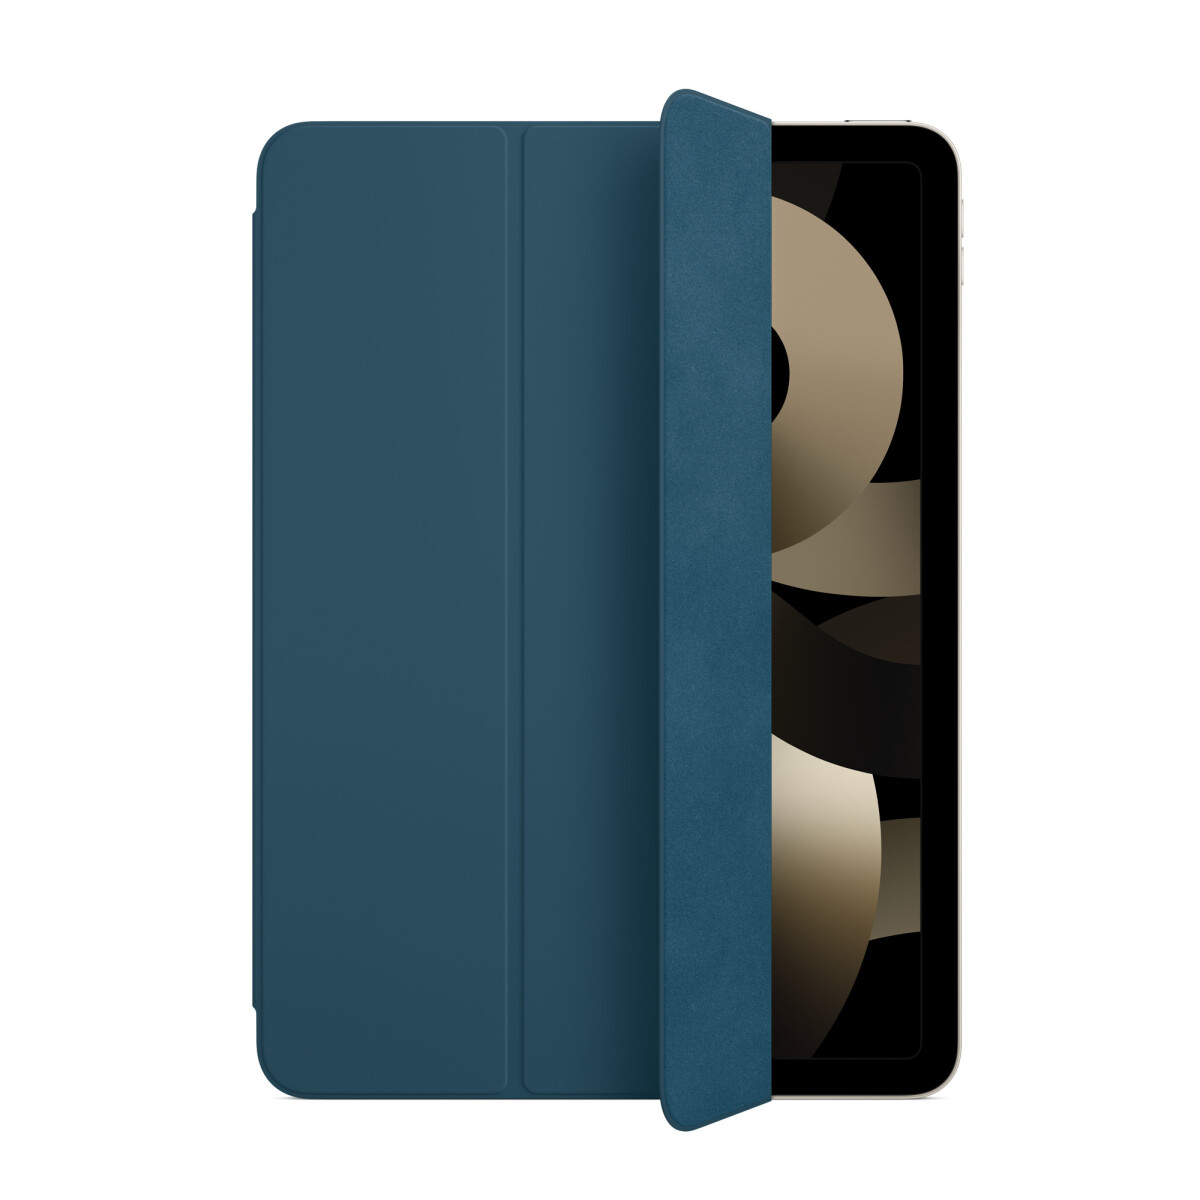 Funda Smart Folio para el iPad Air (4 y 5.ª generación) - Azul mar 